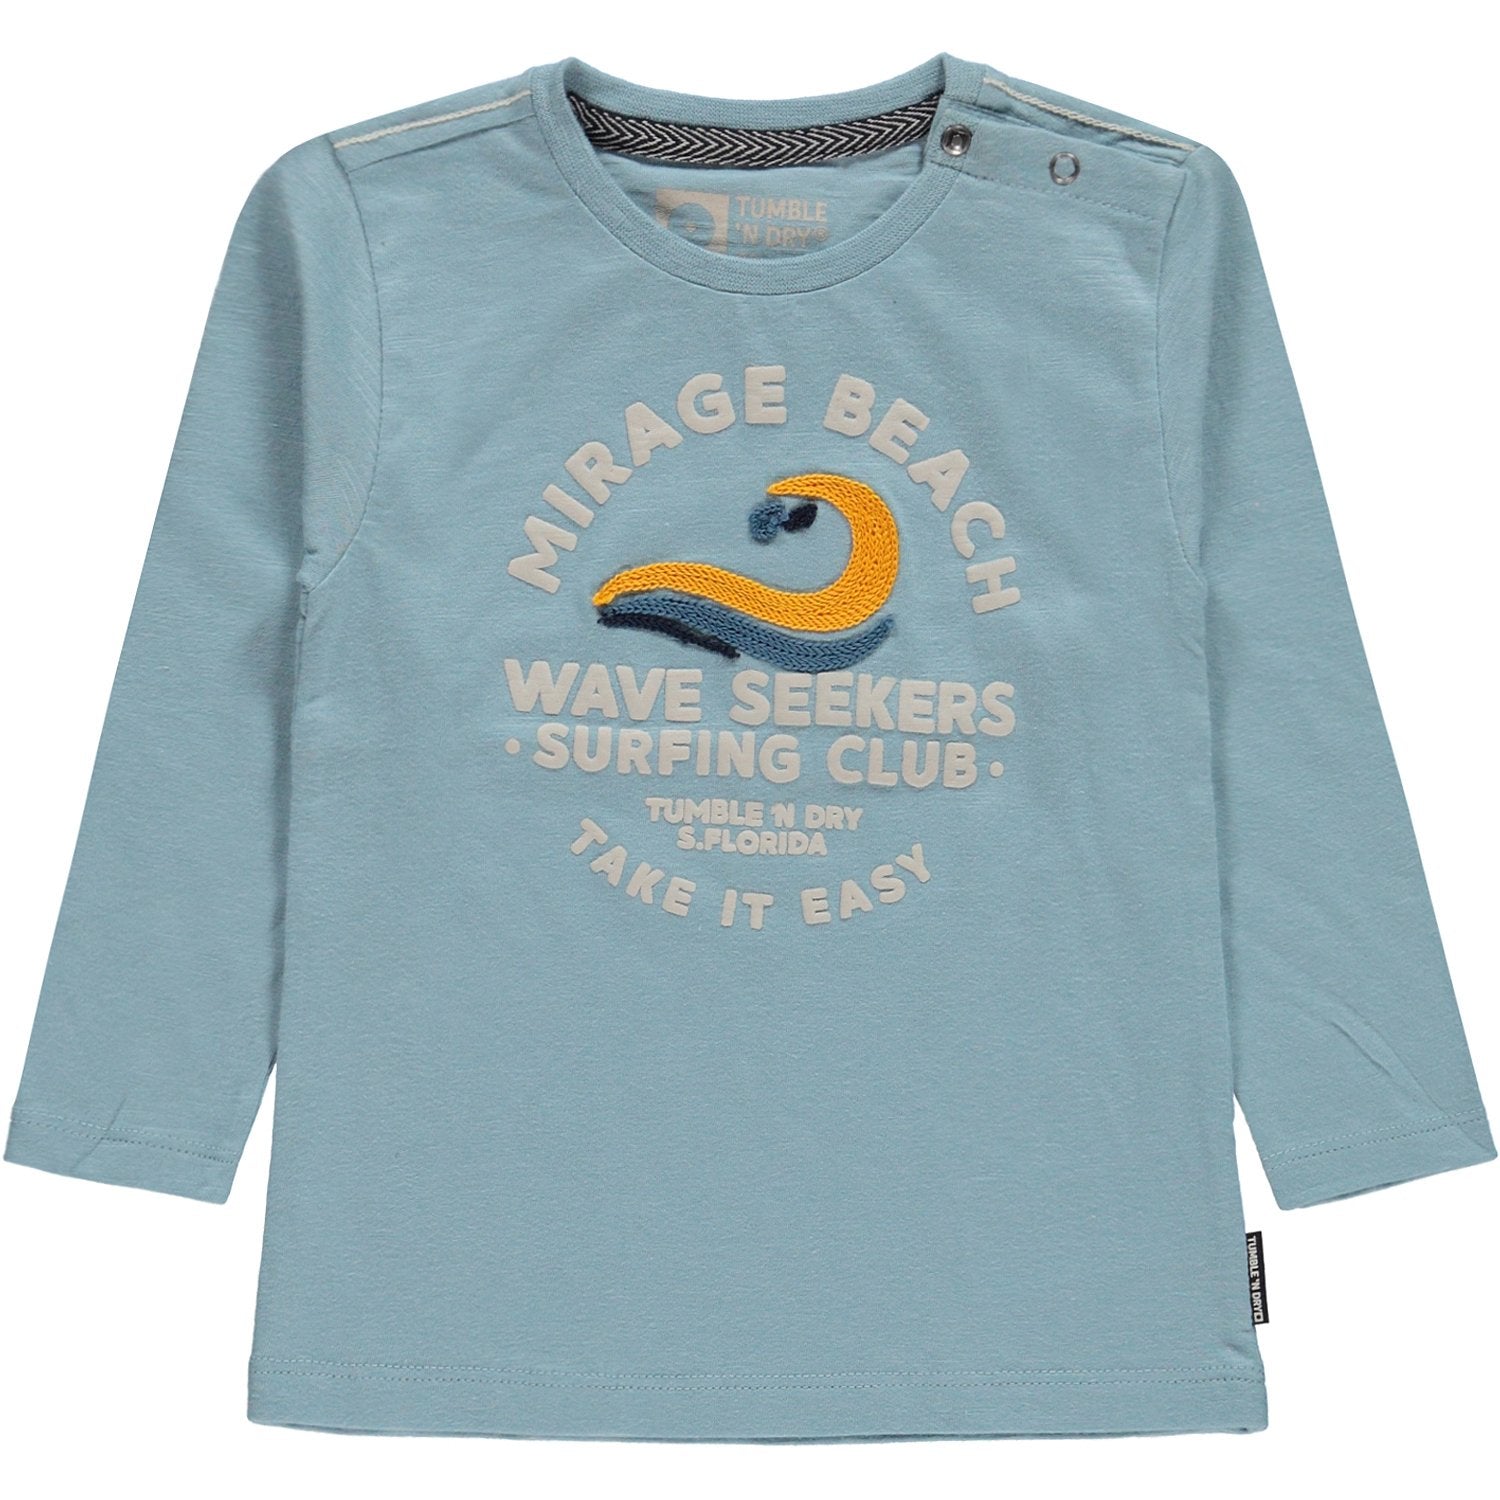 Baby Jongens T-shirt Lm O-hals van Tumble 'n Dry in de kleur Light steel blue in maat 86.